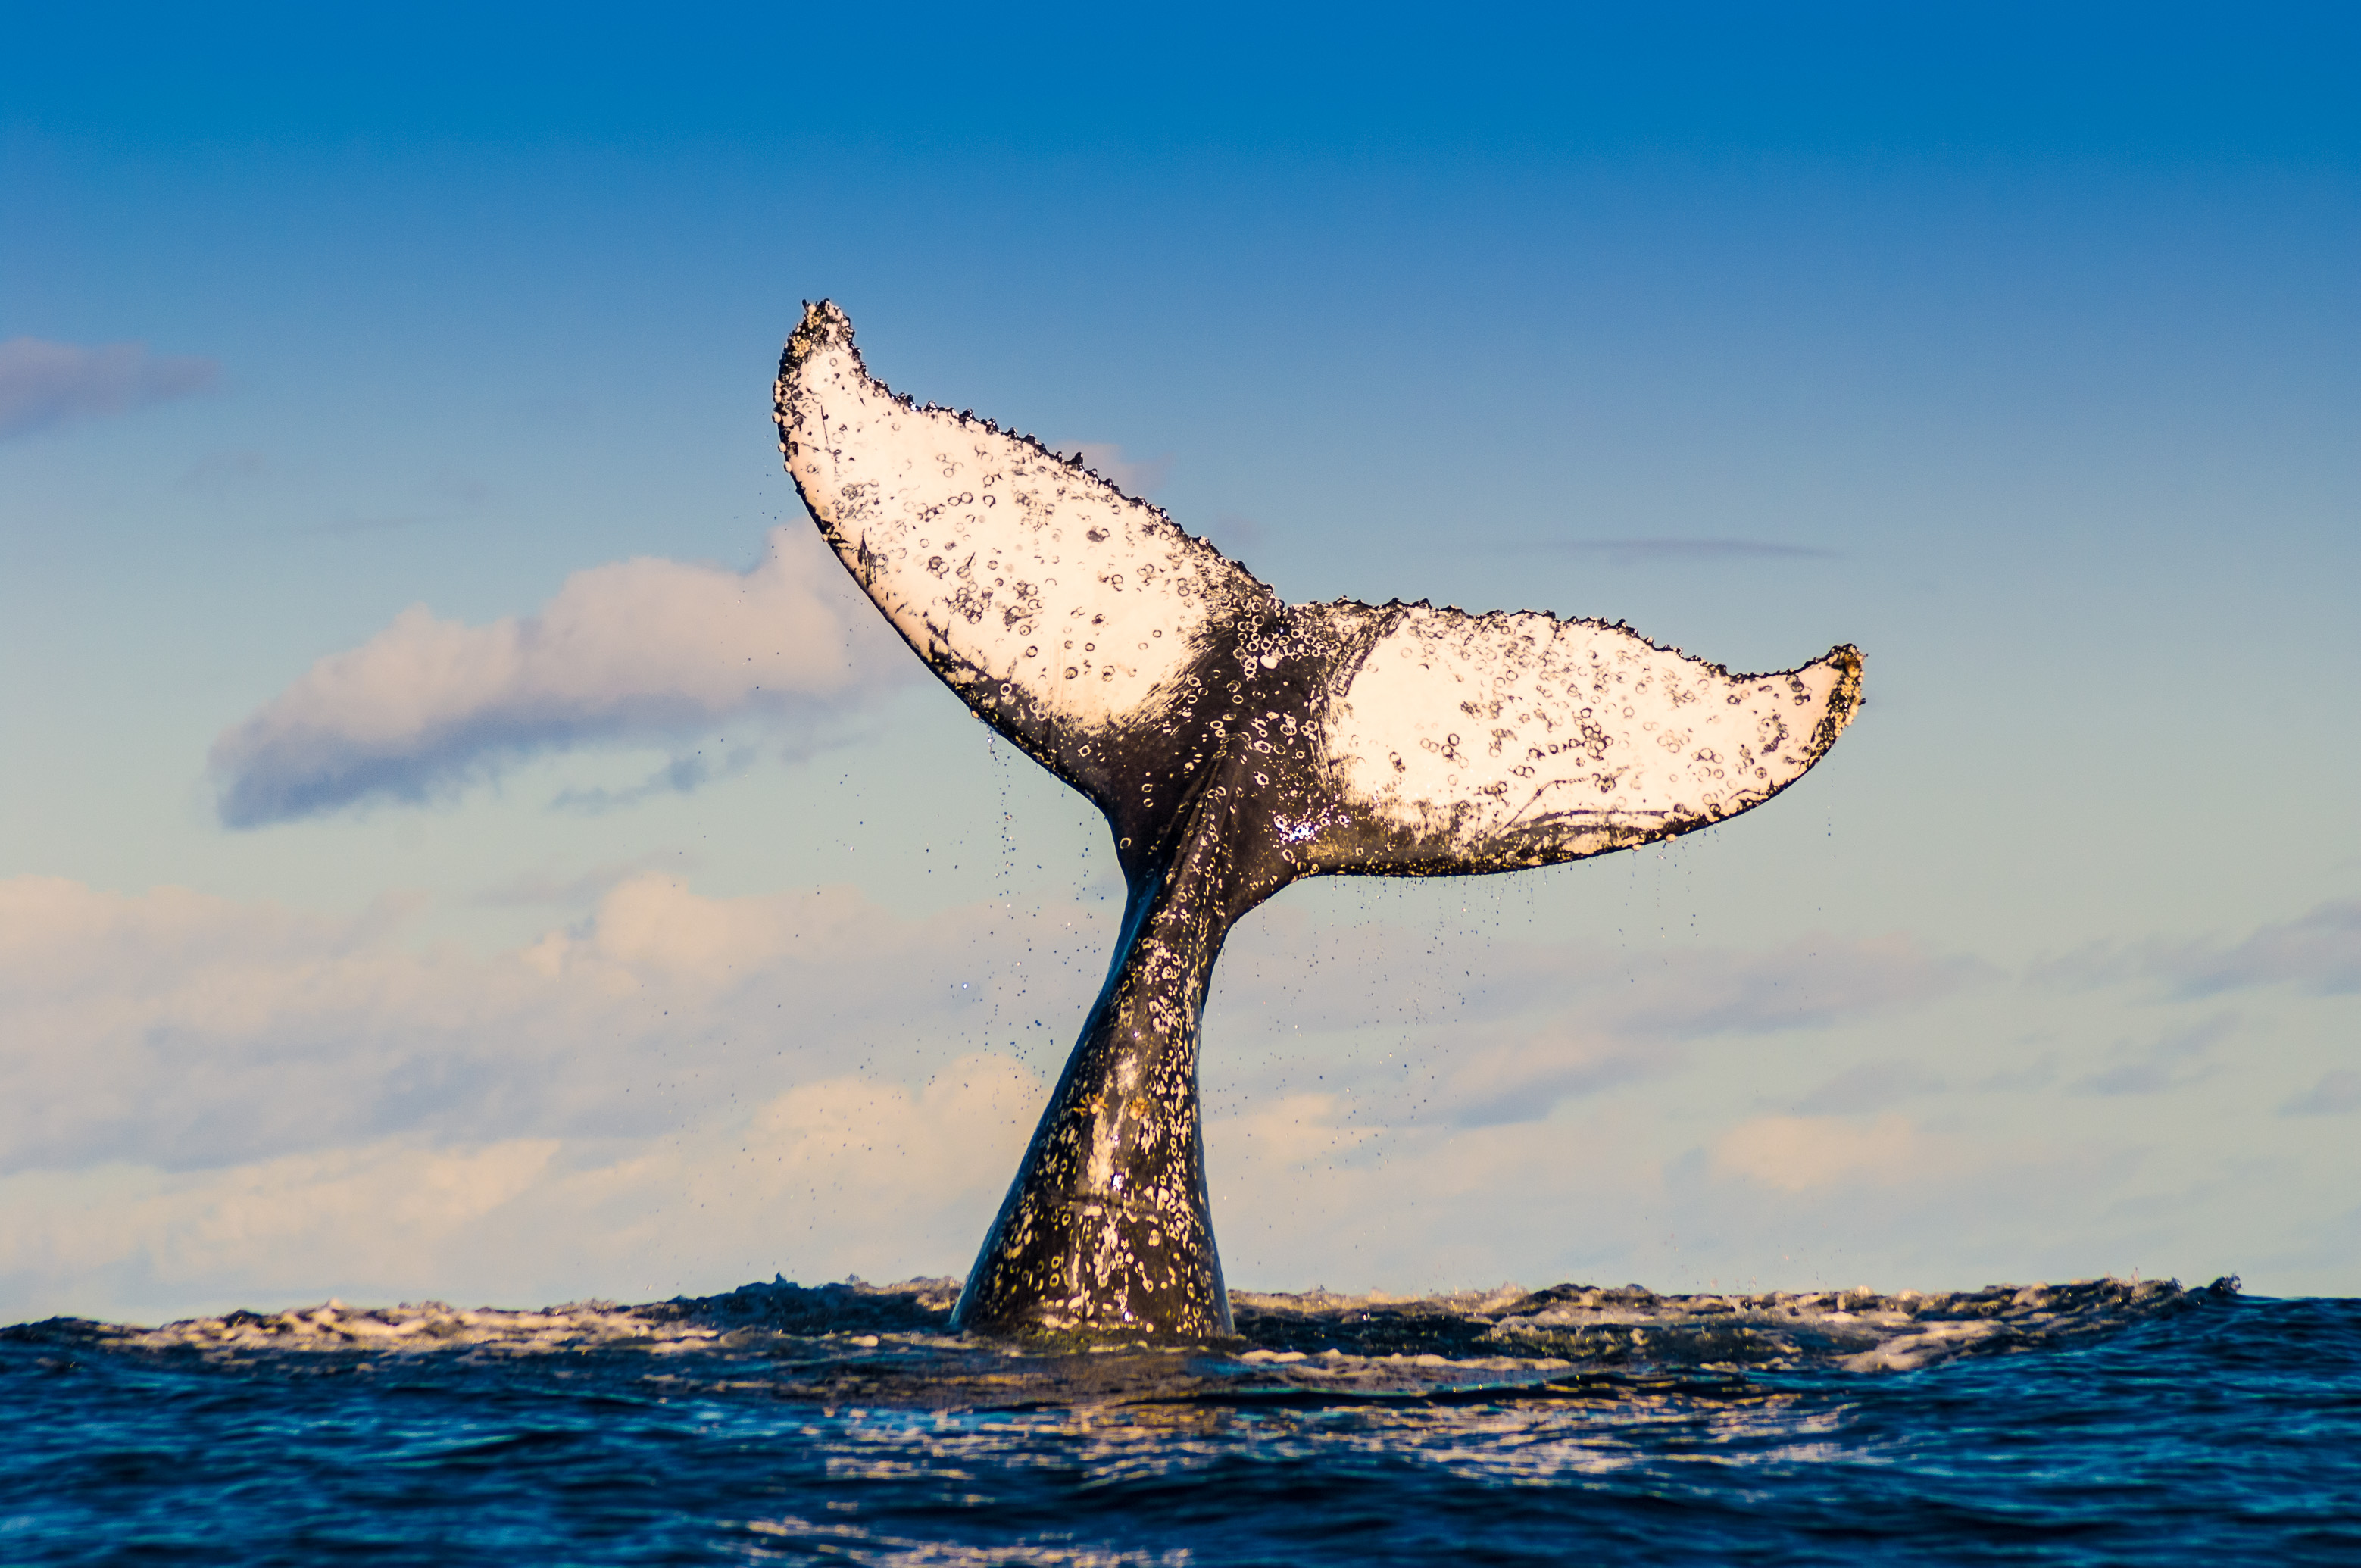 caudal fin of humpback whale male singing, not far from Sainte-Marie island, East Madagascar / Nageoire caudale de baleine à bosse mâle en train de chanter, au large de l'île de Sainte-Marie, Est Madagascar.